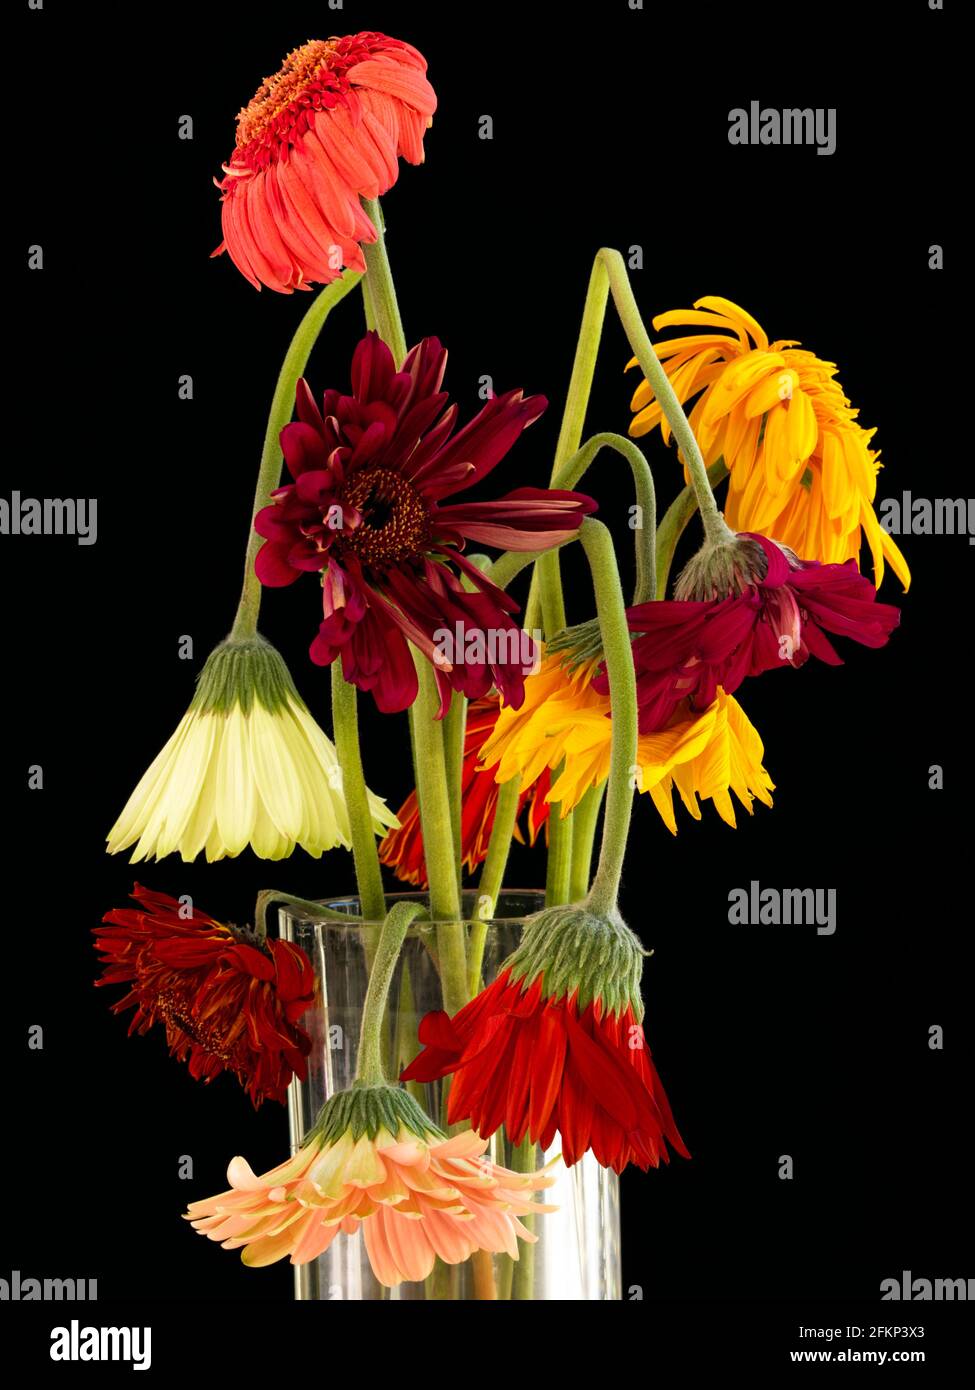 Un arrangement foral de Gerbera qui ont fané. Arrangement floral multicolore de Gerbera (Asteraceae) qui est originaire des régions tropicales Banque D'Images